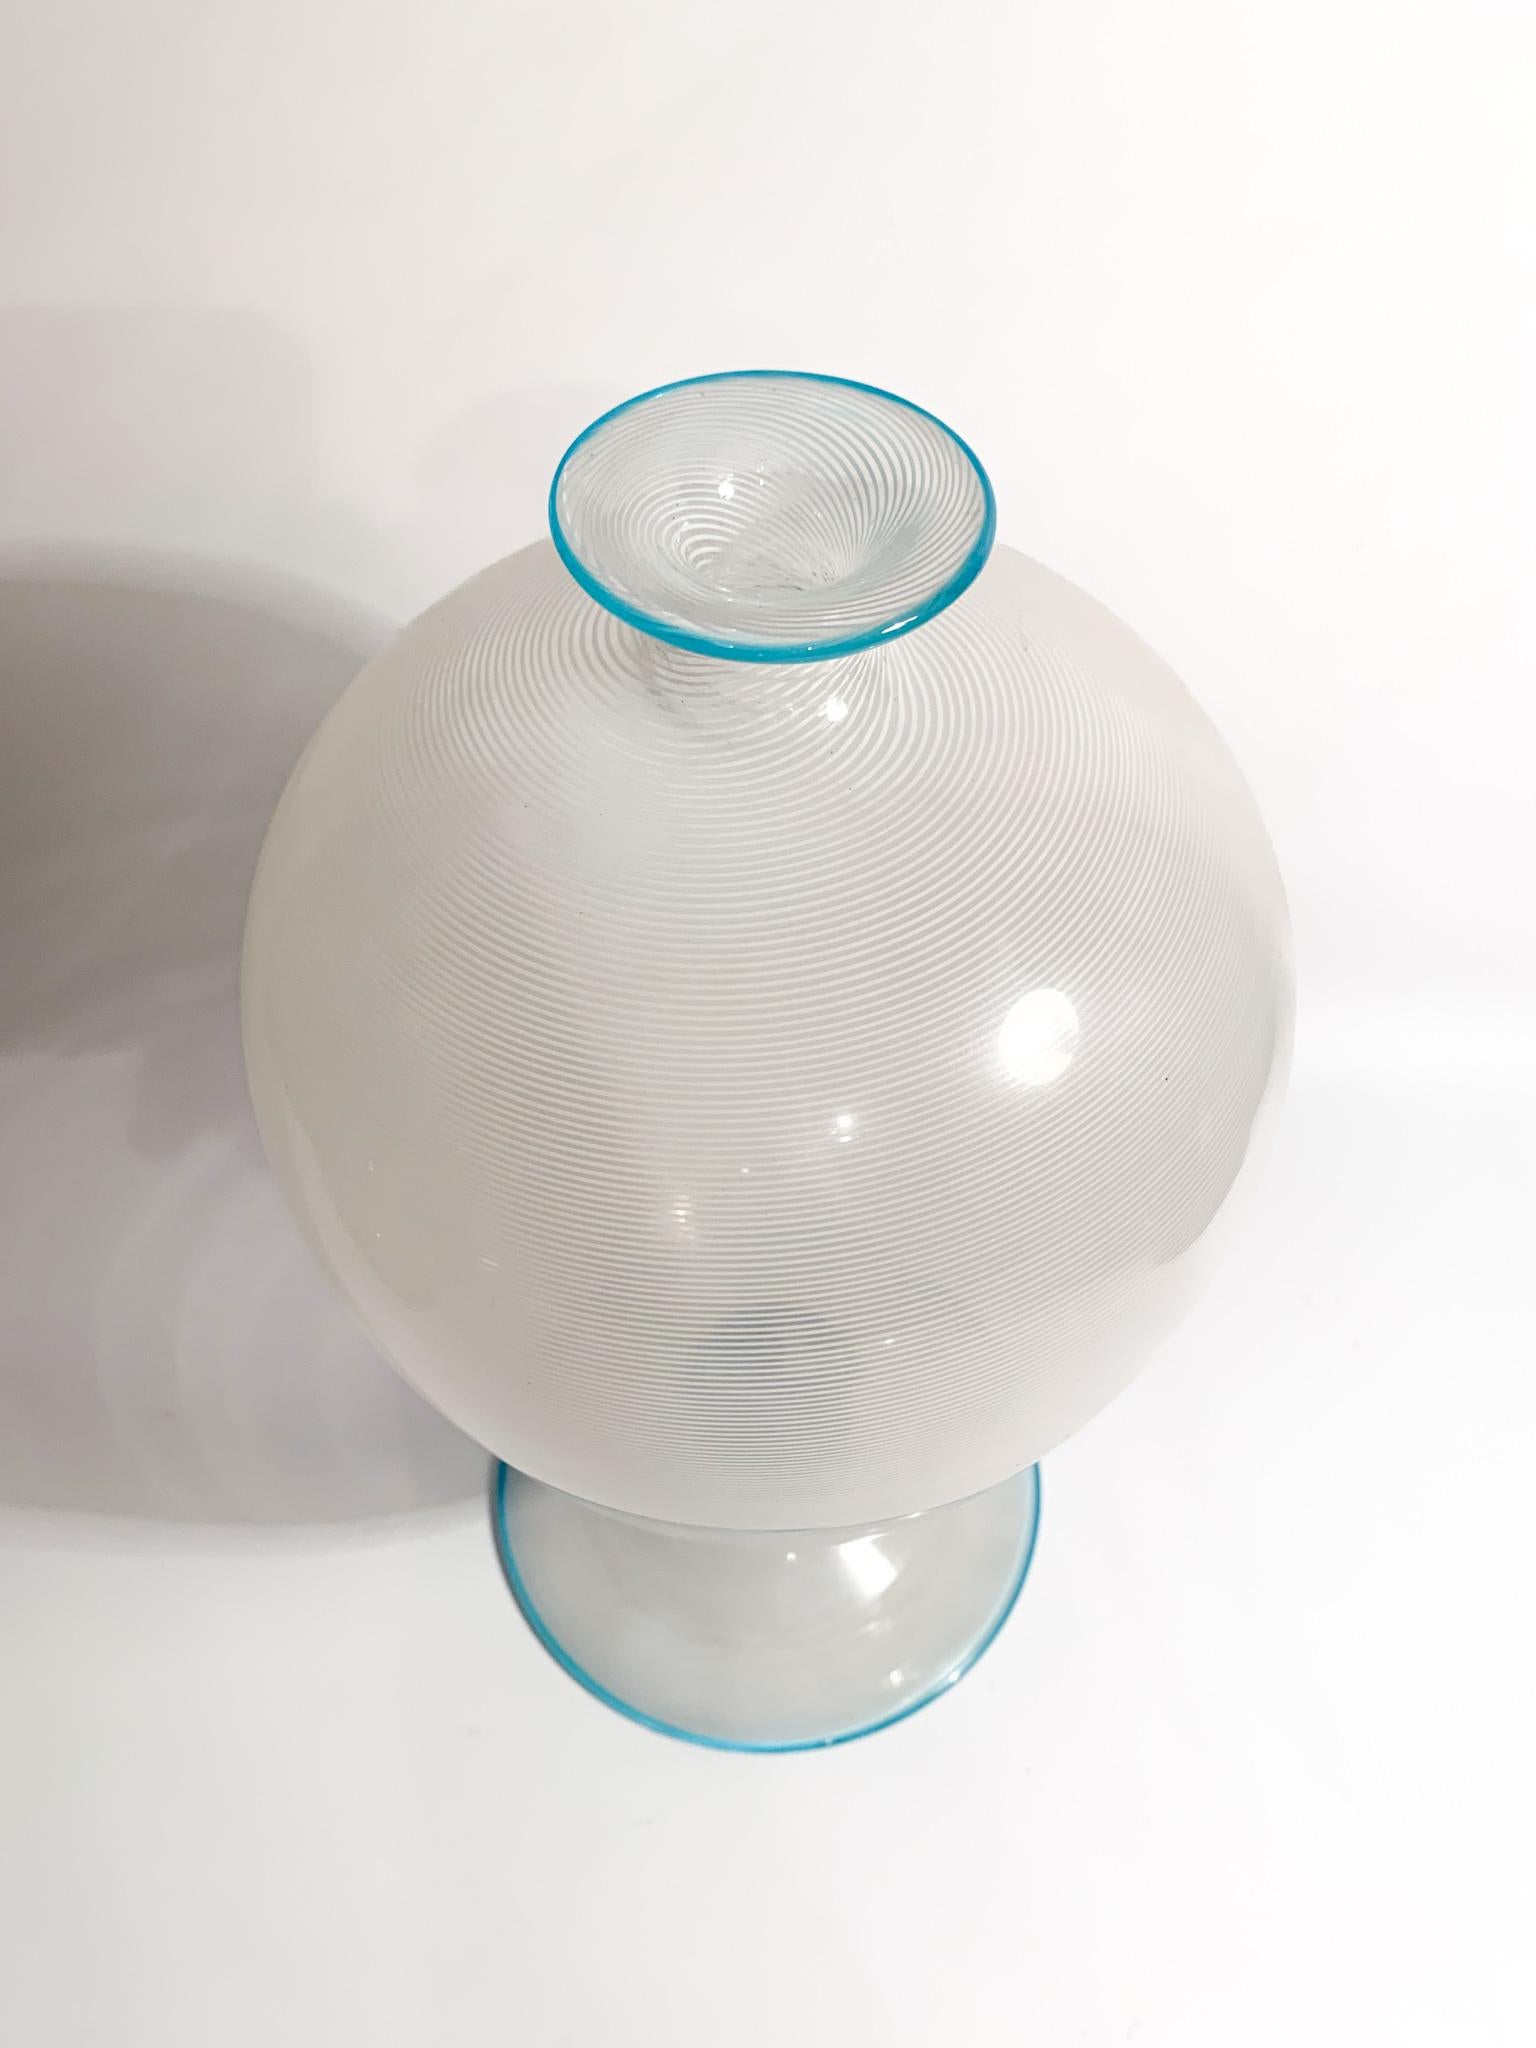 Veronese Model Filigree Vase in Murano Glass by Barovier & Toso, 1950s For Sale 2